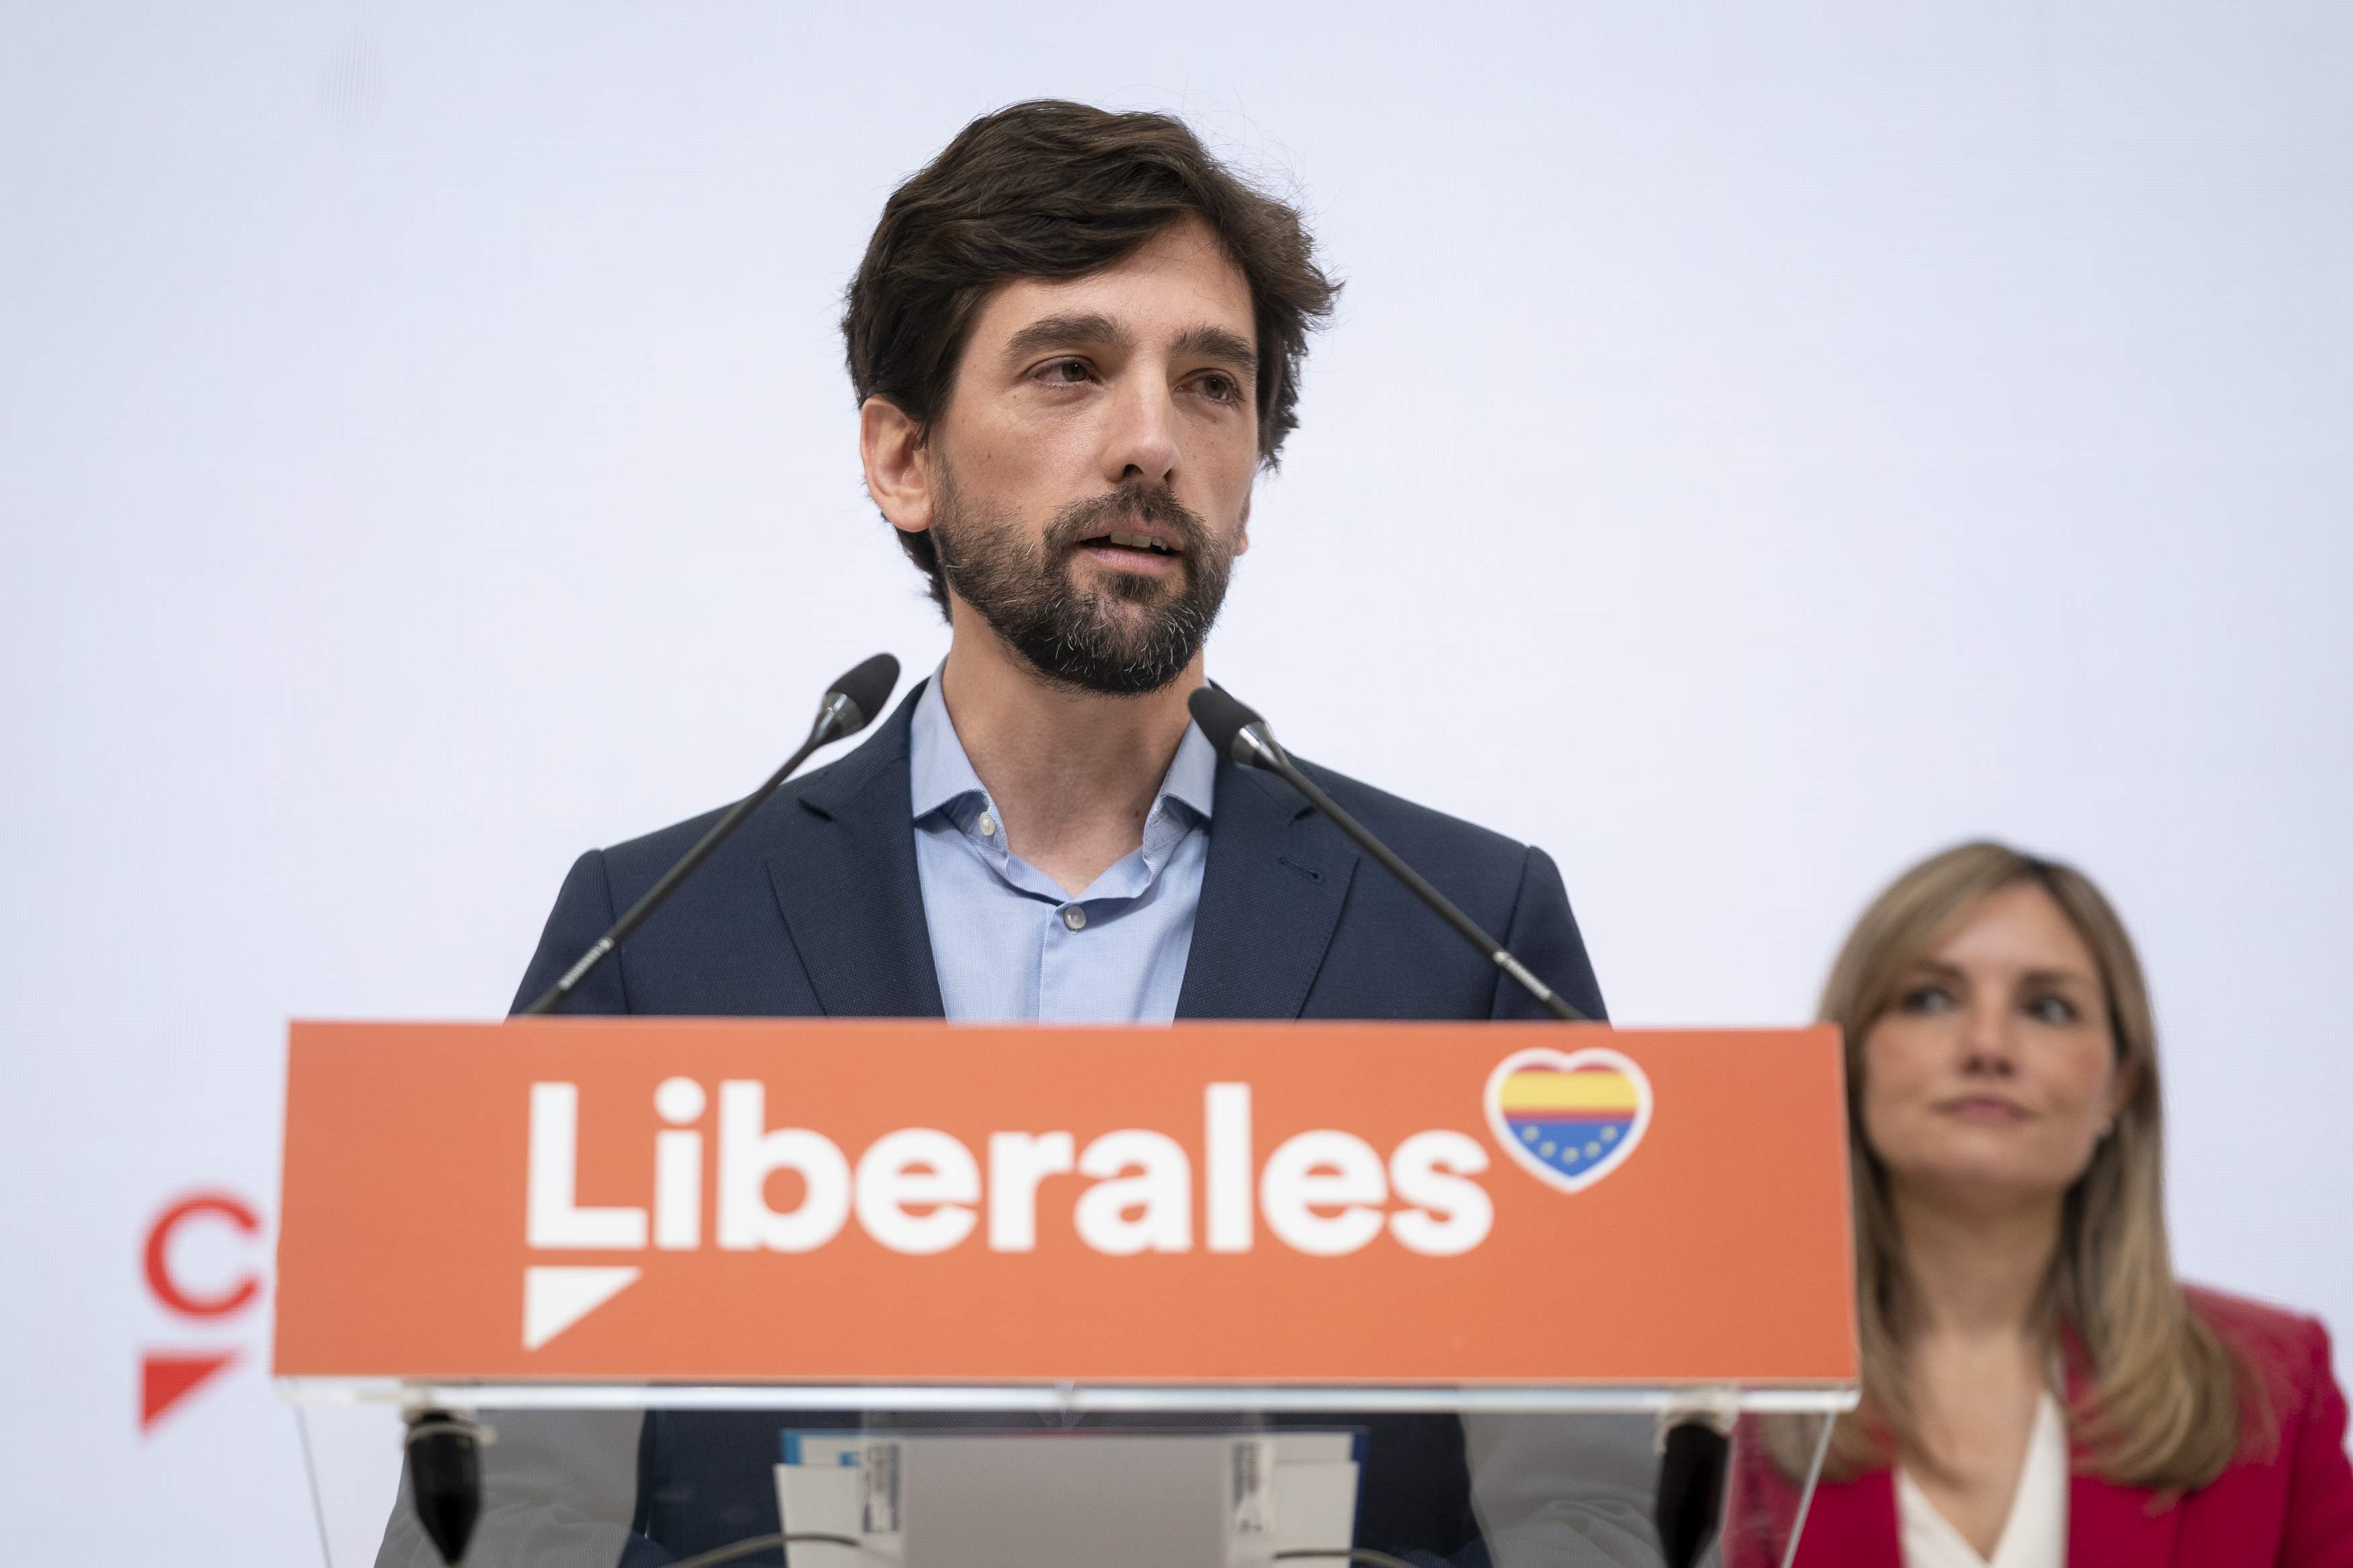 Dos eurodiputados de Ciudadanos incumplieron la carta ética al no dar parte de su sueldo al partido